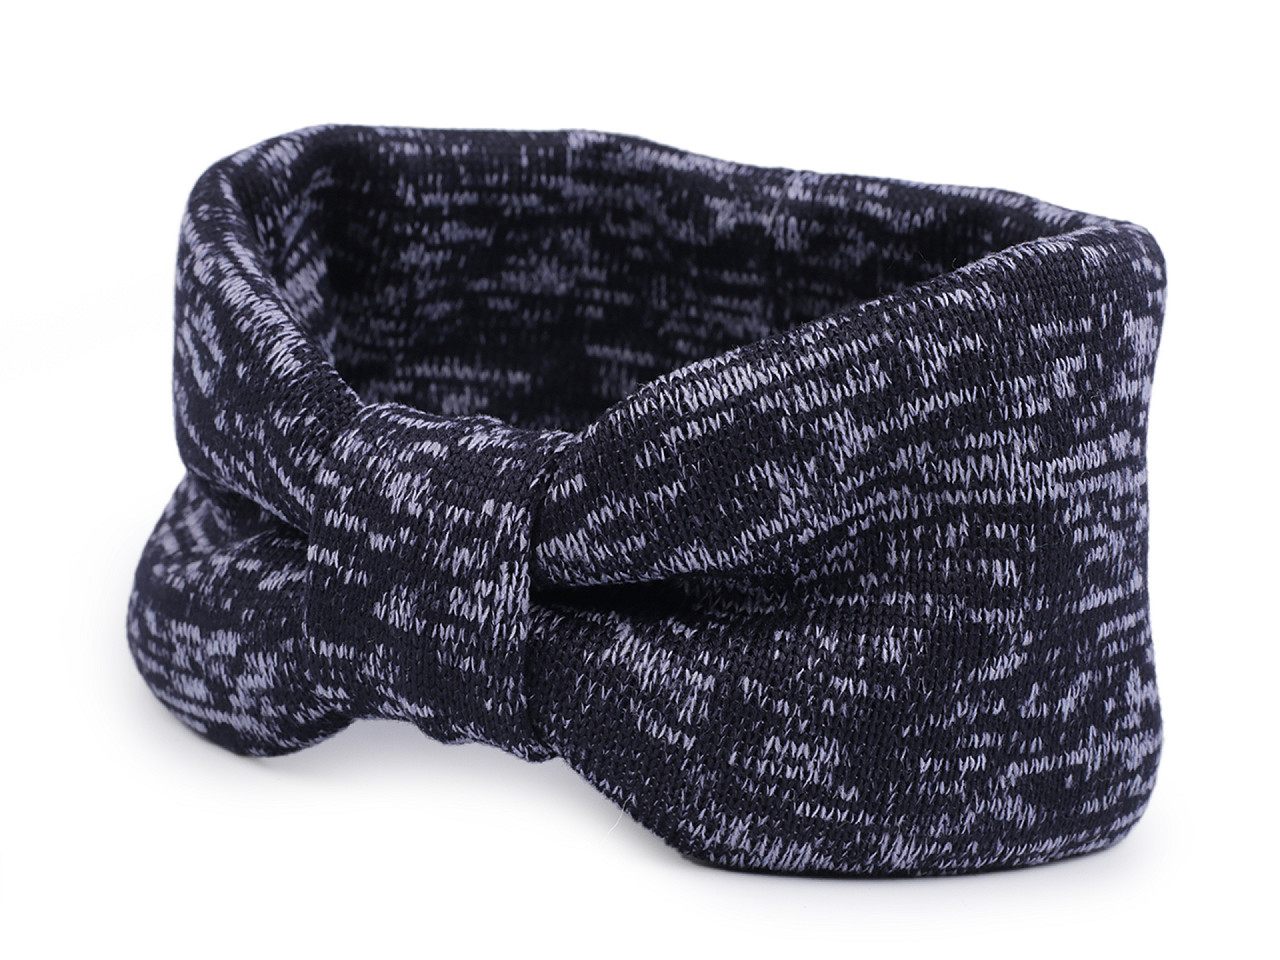 Damen Winter Stirnband, dunkelblau, 1 Stk